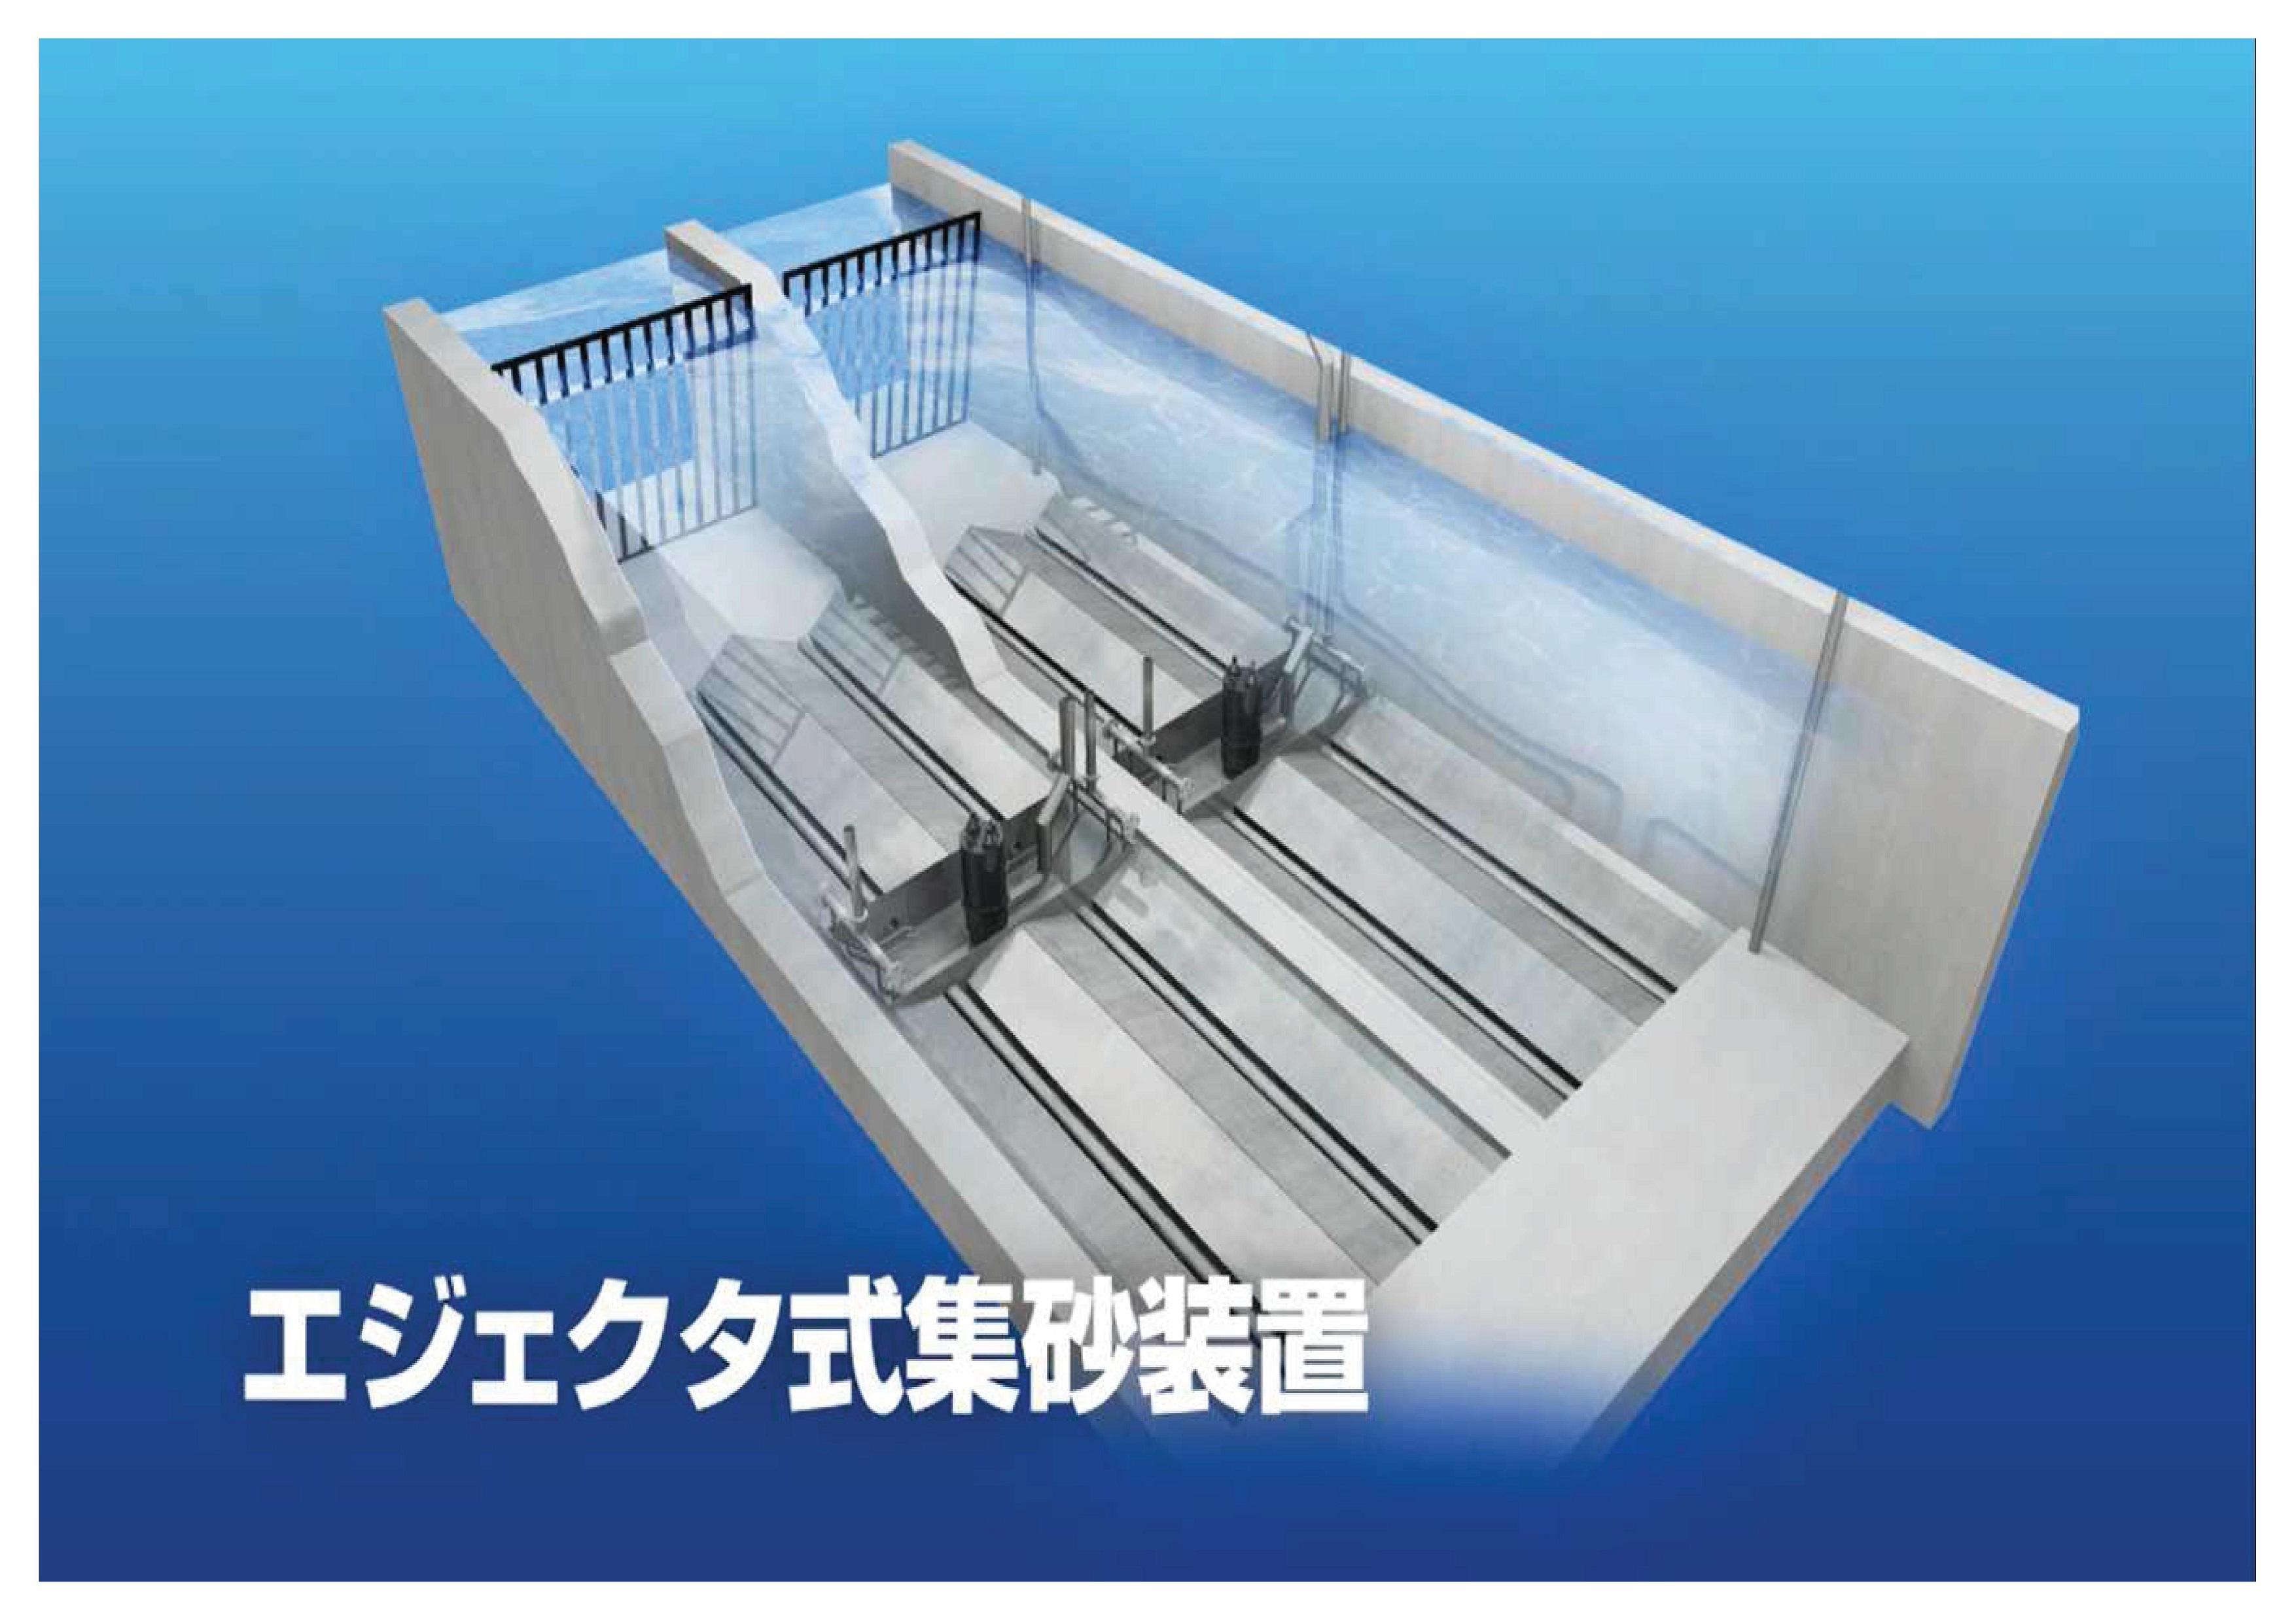 エジェクタ式集砂装置が東京都との共同研究で、「実用化すべき技術」として承認されました。